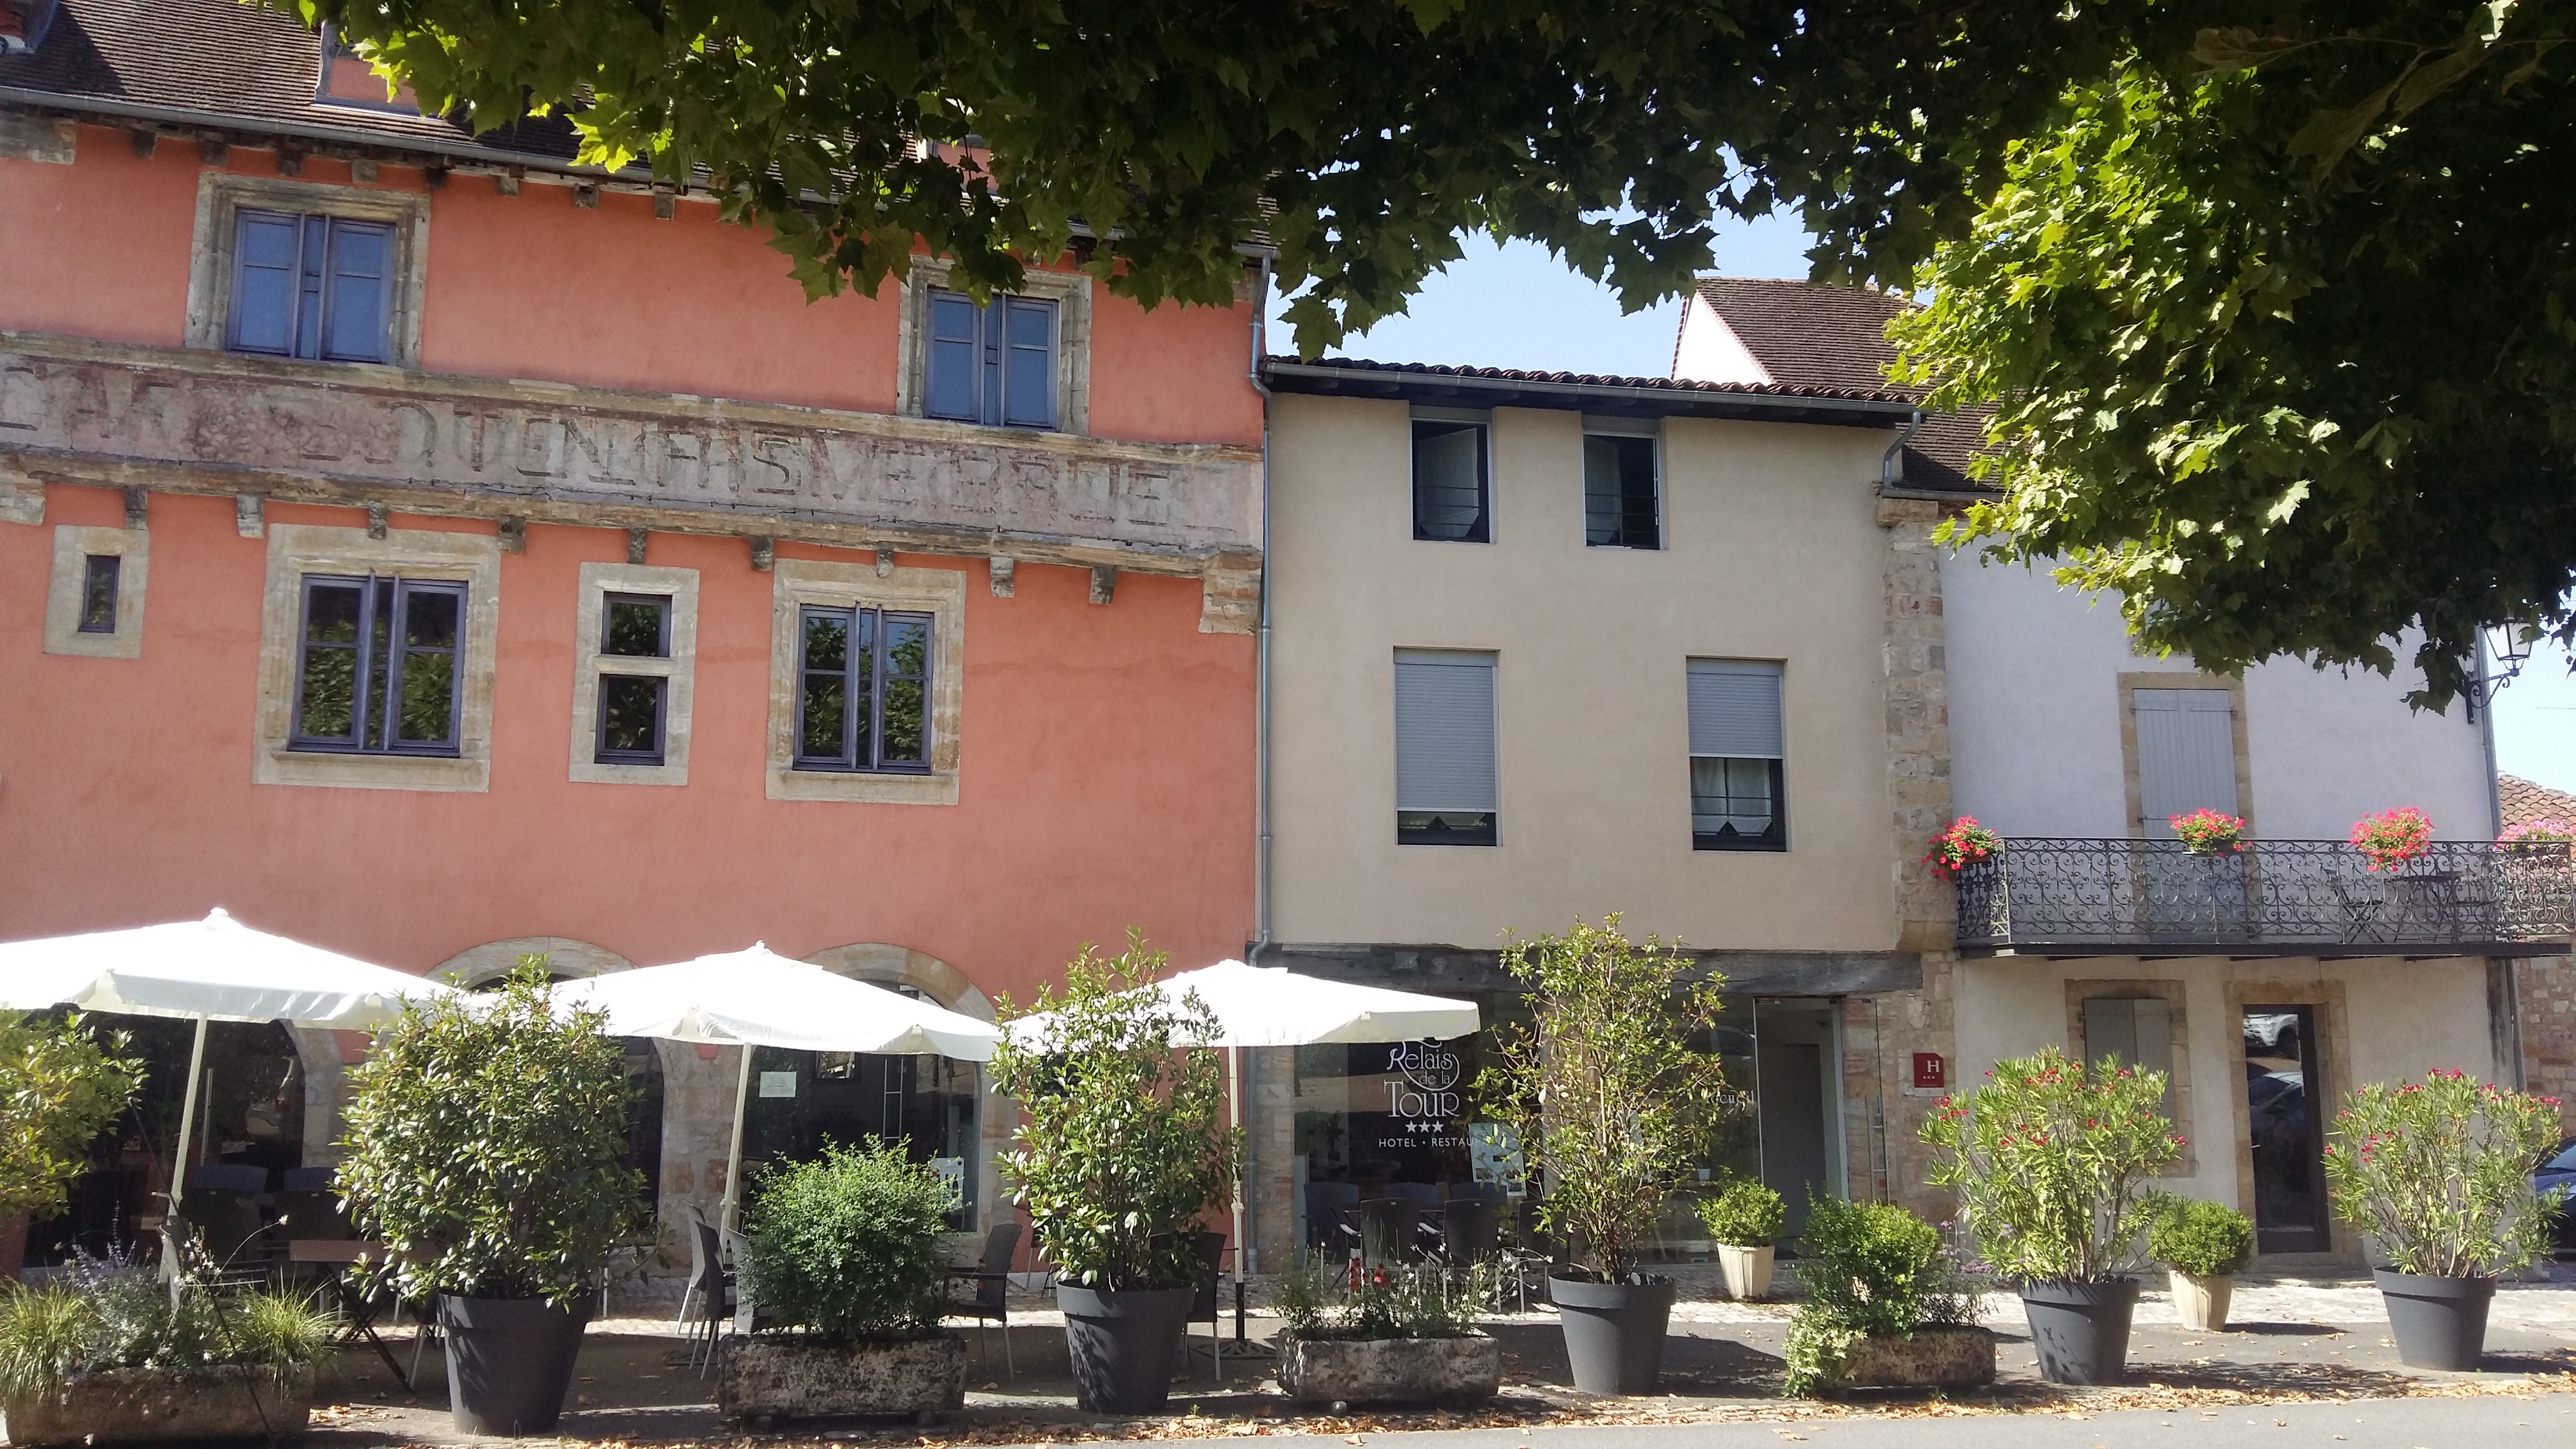 Hôtel Restaurant Le Relais de la Tour  France Occitanie Lot Capdenac 46100